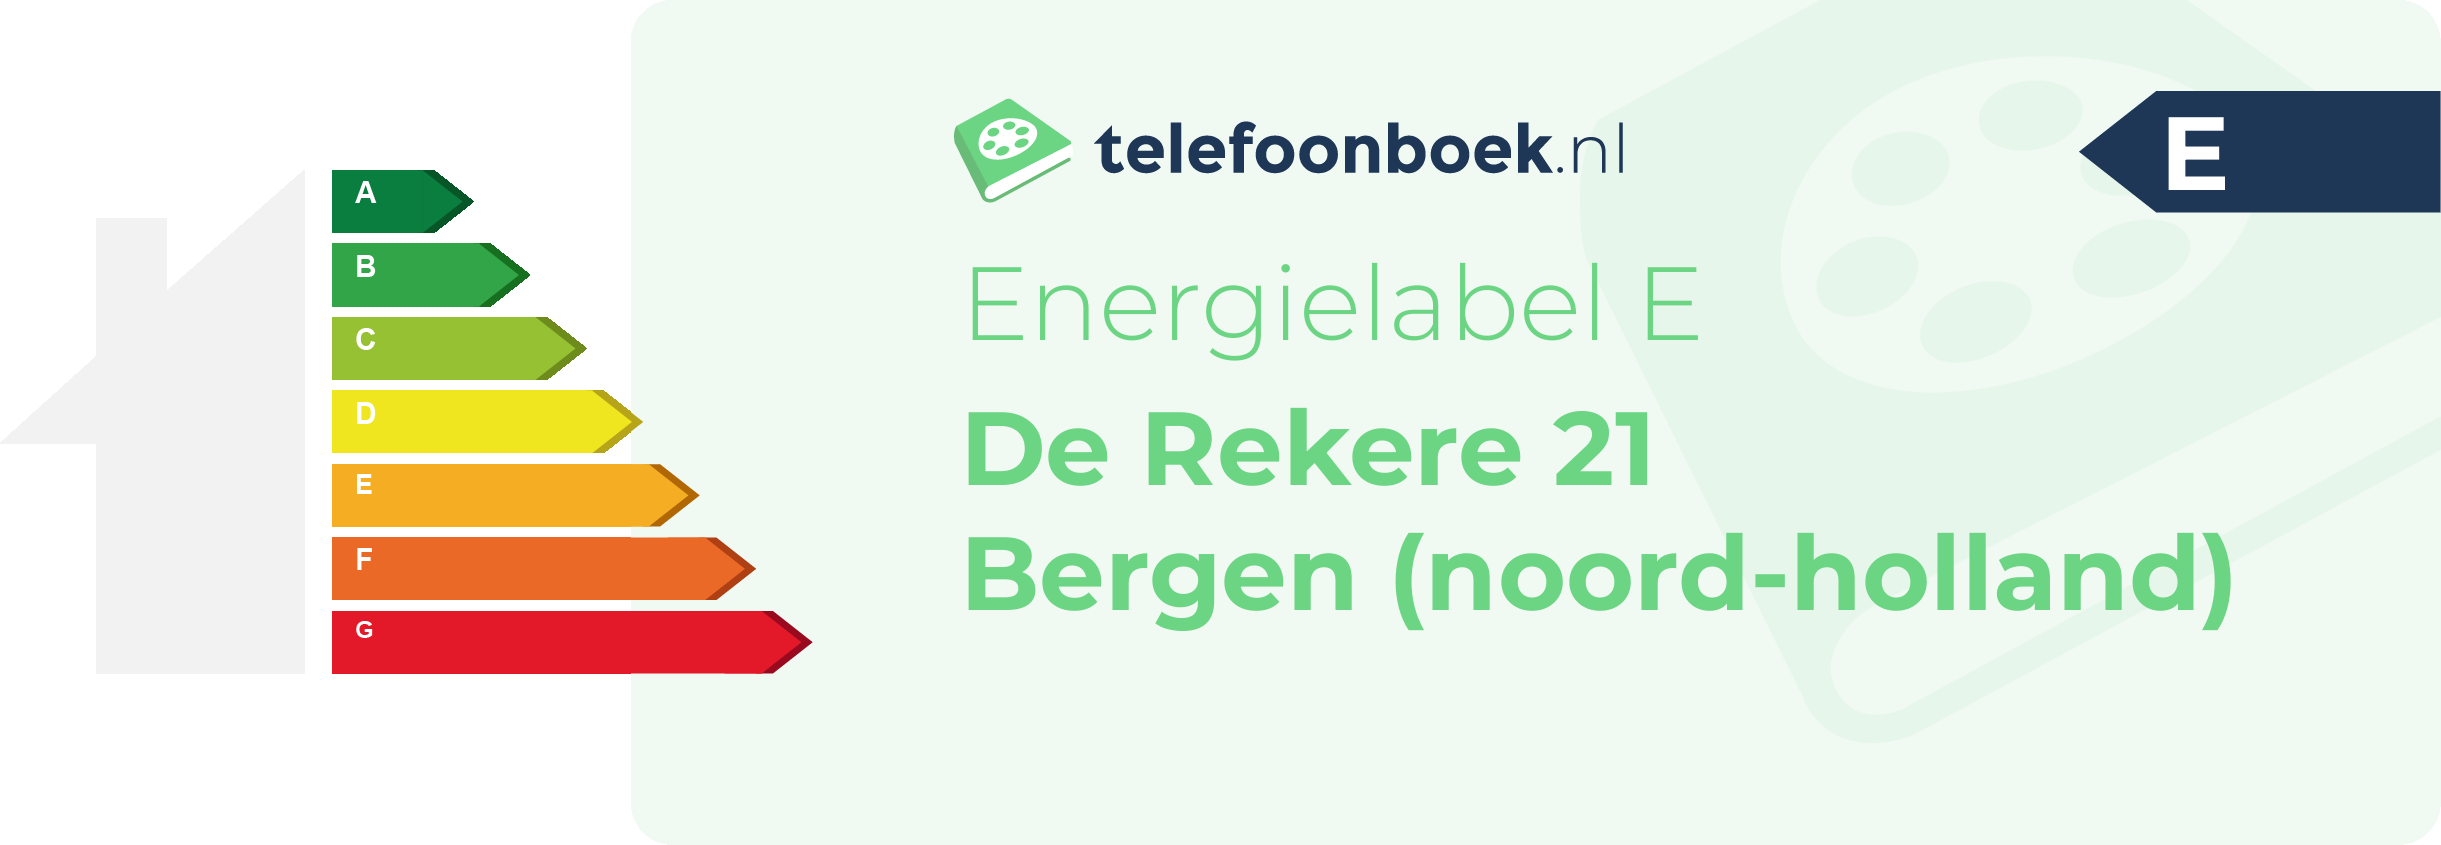 Energielabel De Rekere 21 Bergen (Noord-Holland)